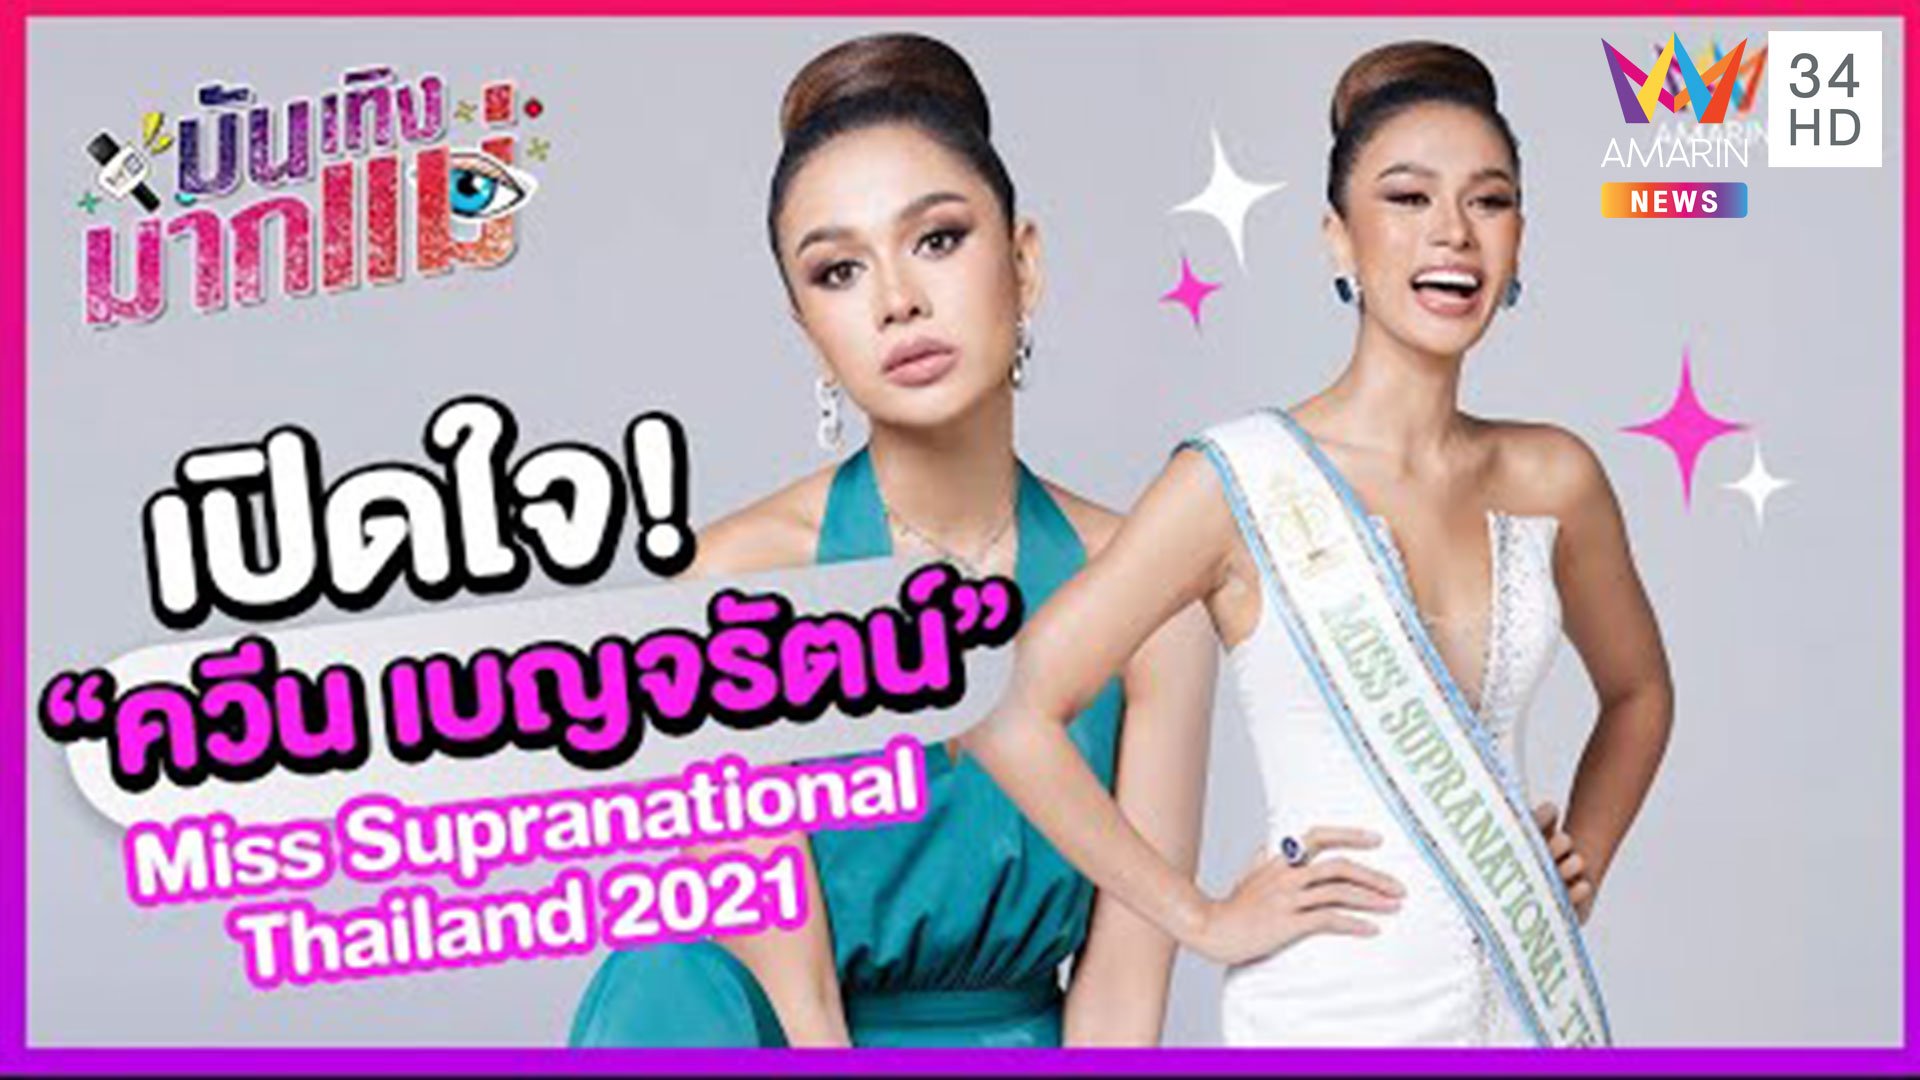 บันเทิงมากแม่ | EP.29 เปิดใจ ควีน เบญจรัตน์ Miss Supranational Thailand 2021 | 12 มิ.ย. 64 | AMARIN TVHD34